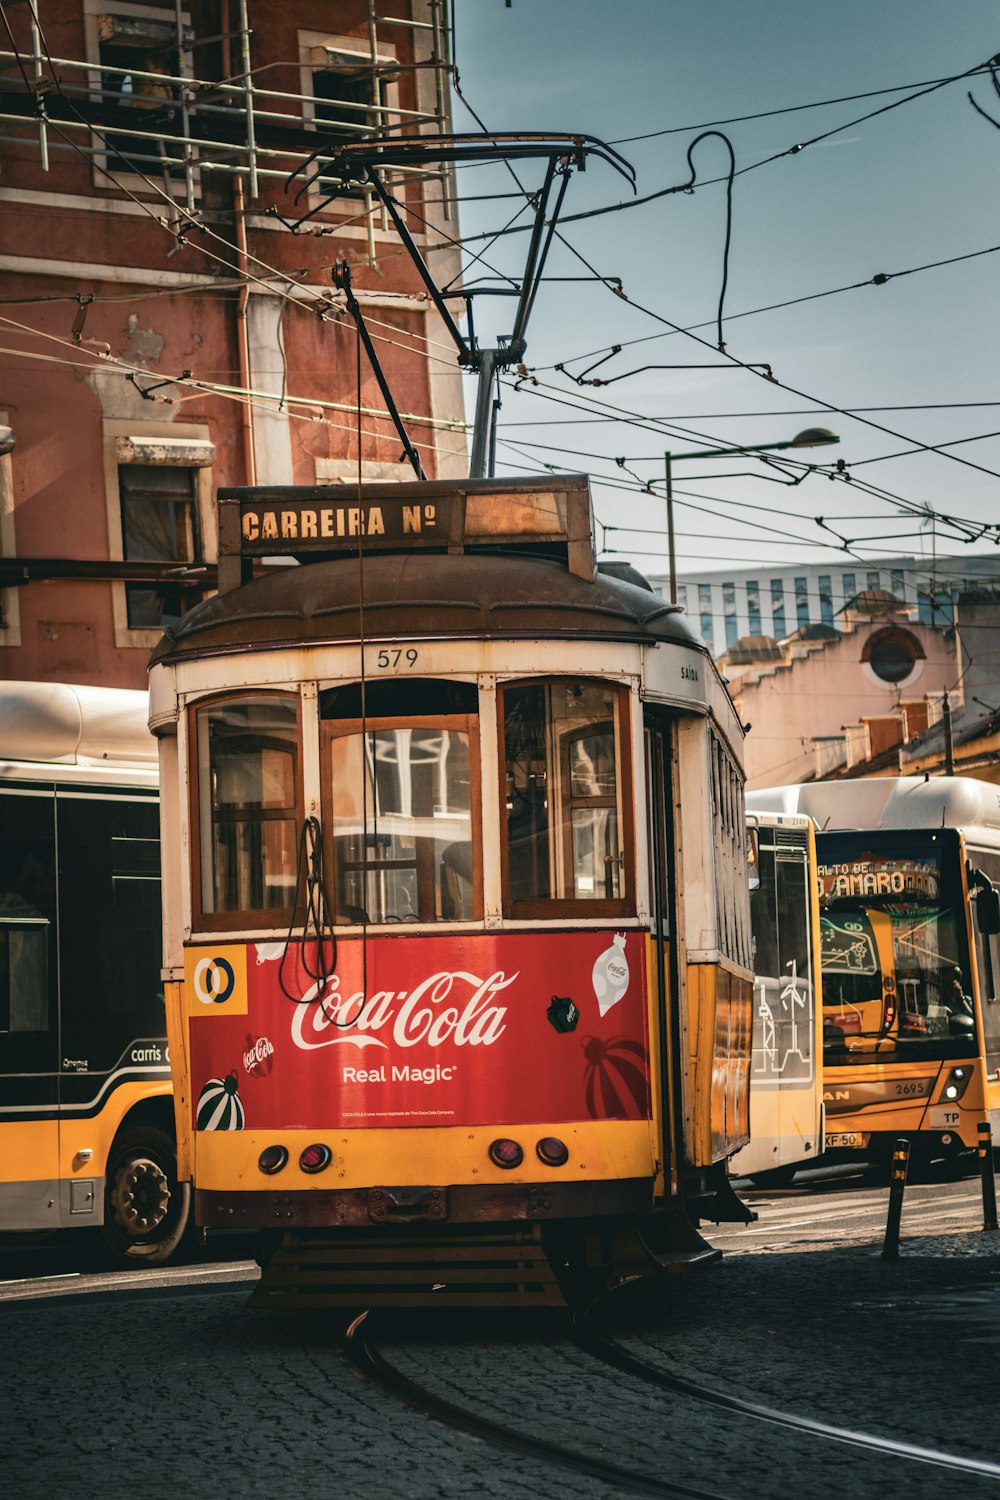 a trolley car on a street in a city